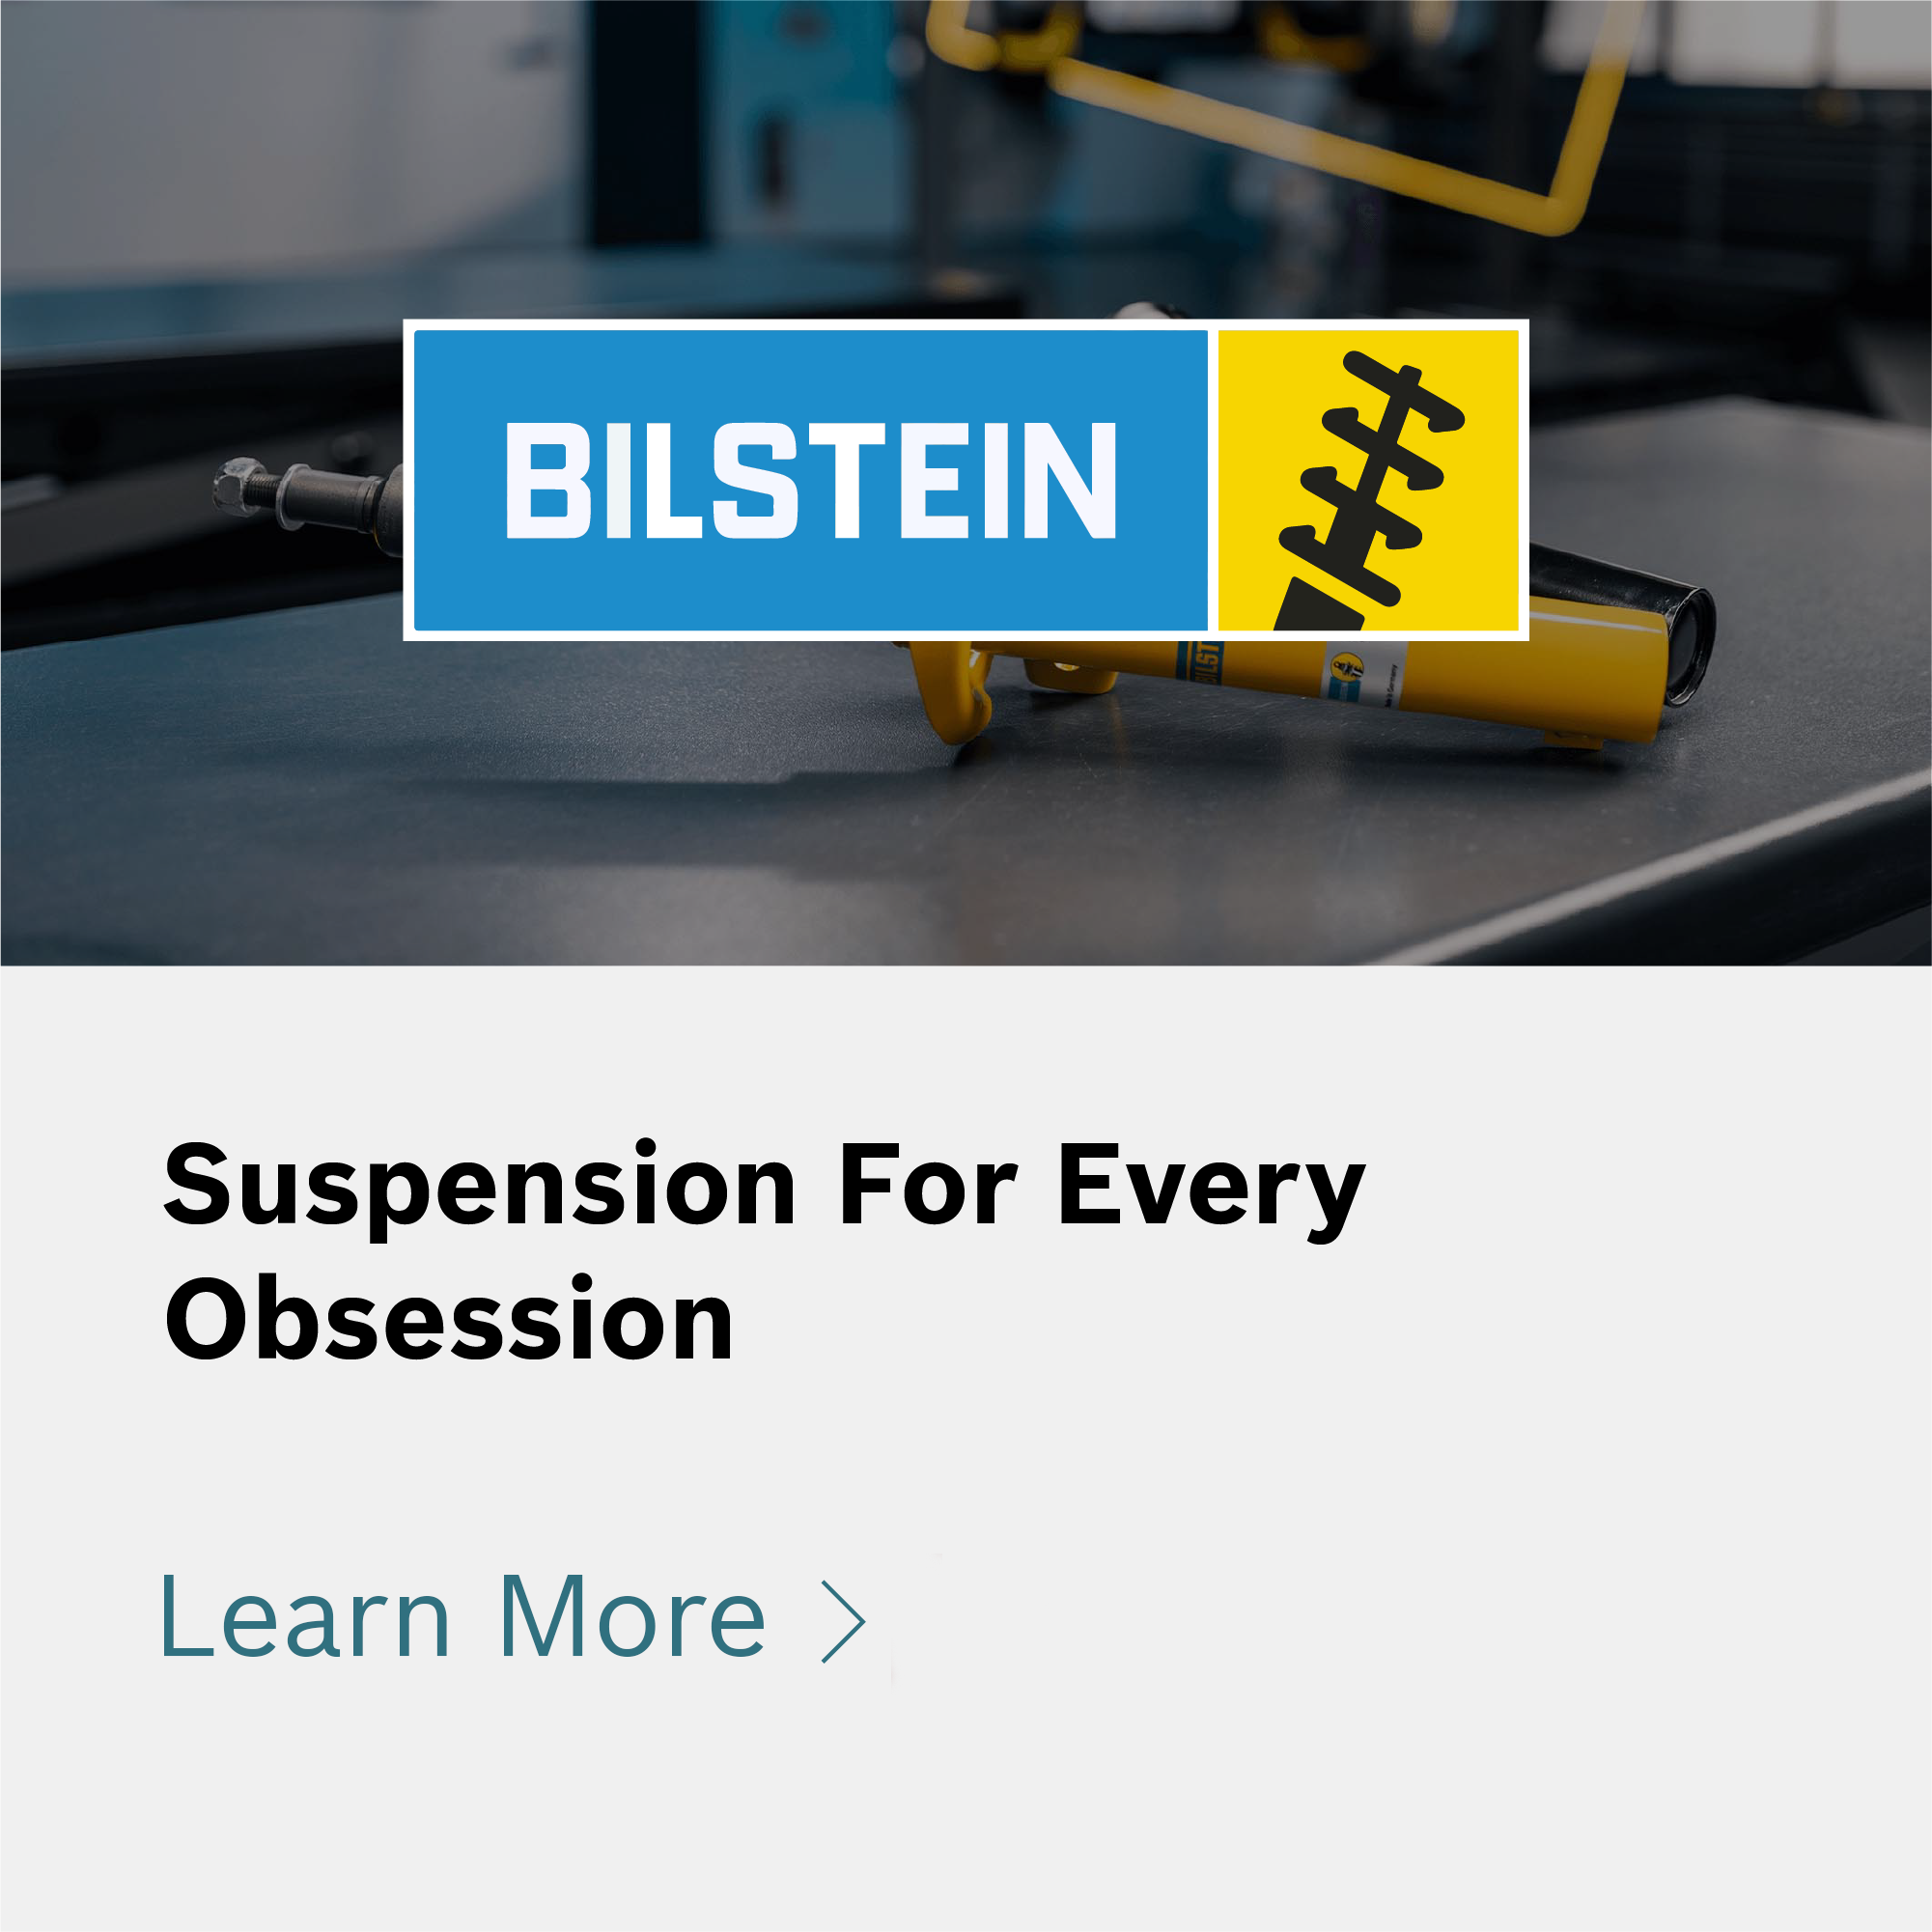 Bilstein partner brand